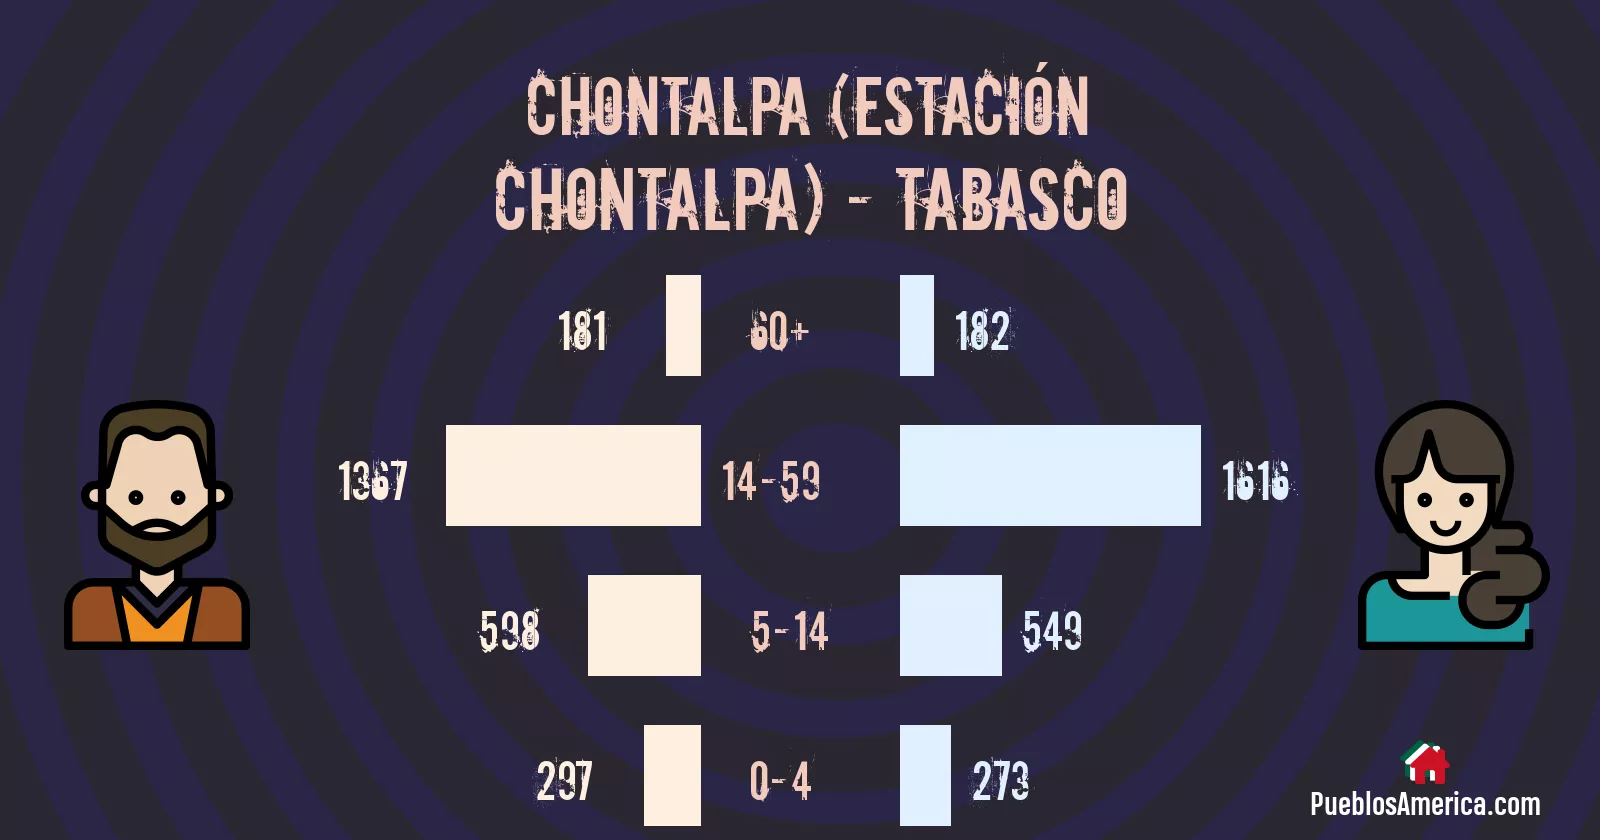 clinica 40 imss chontalpa estacionchontalpa 1 2023